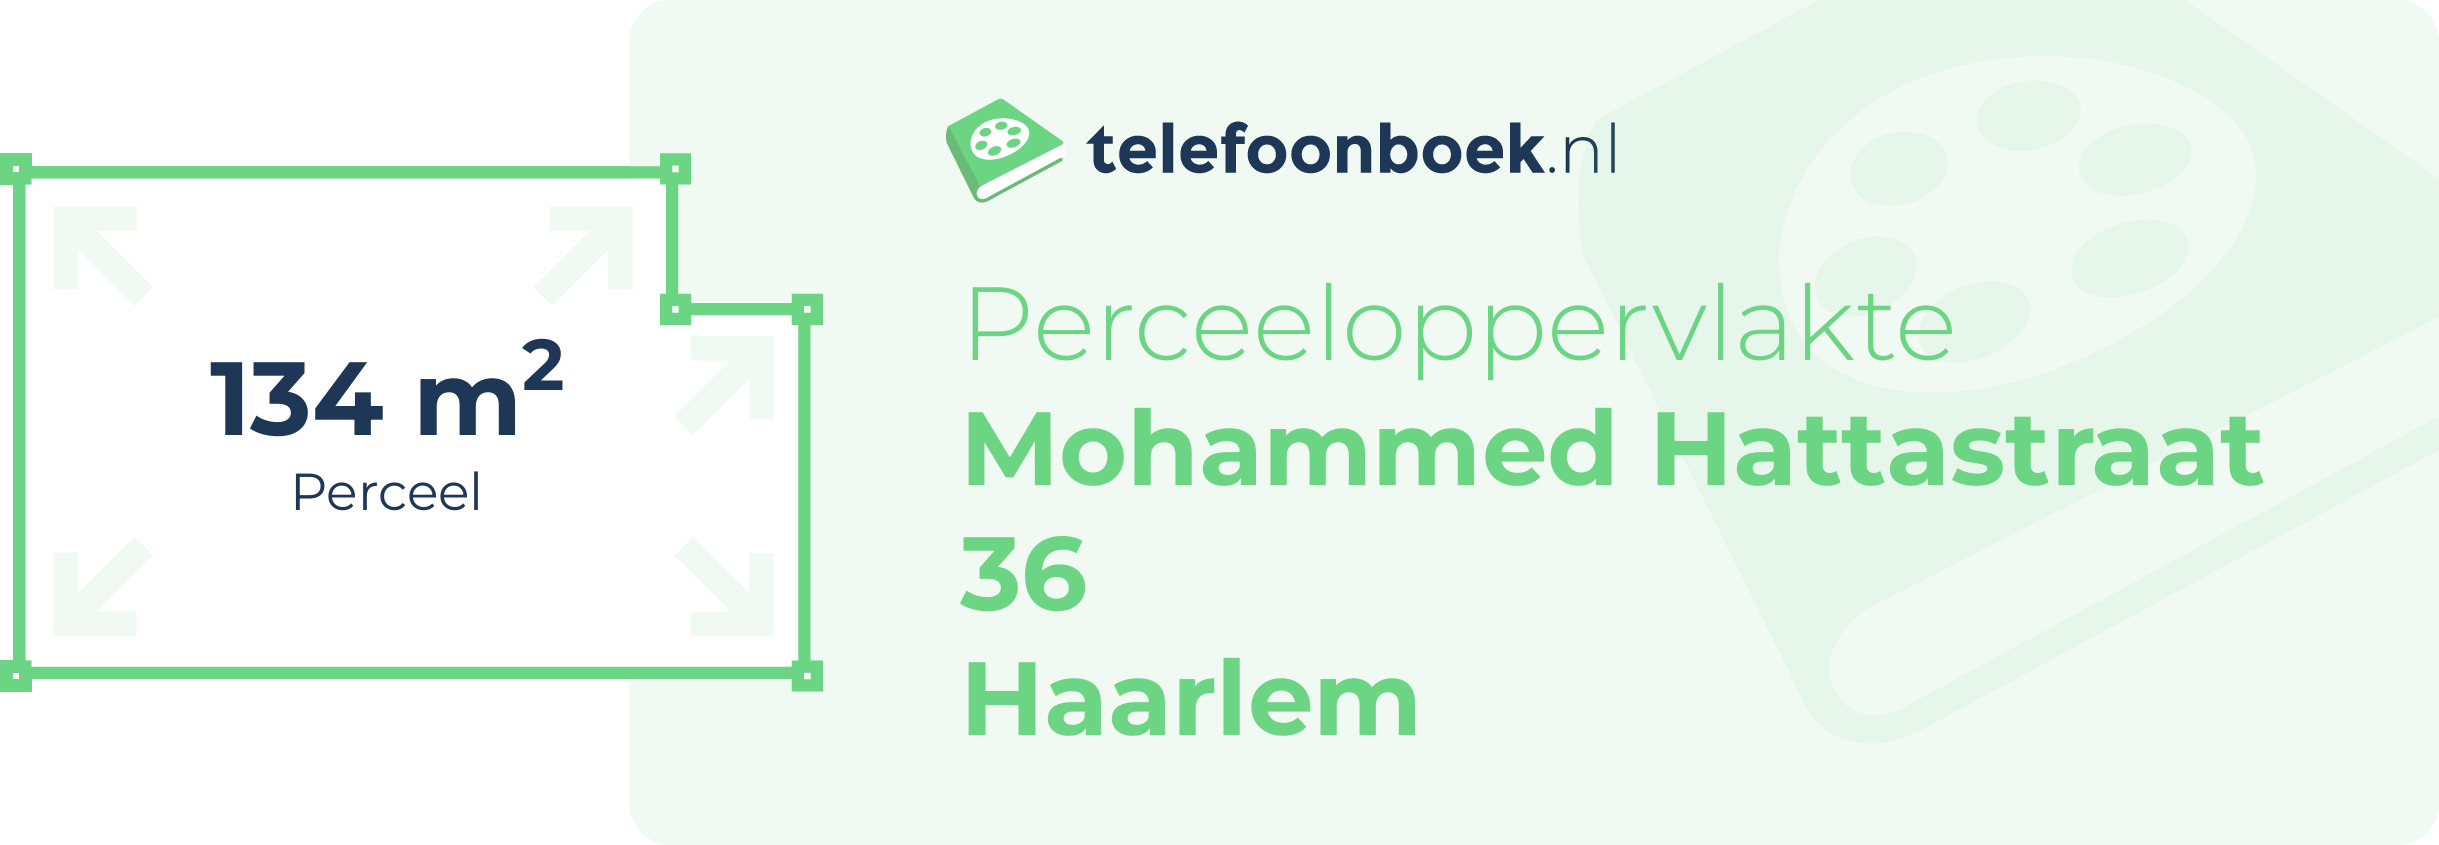 Perceeloppervlakte Mohammed Hattastraat 36 Haarlem